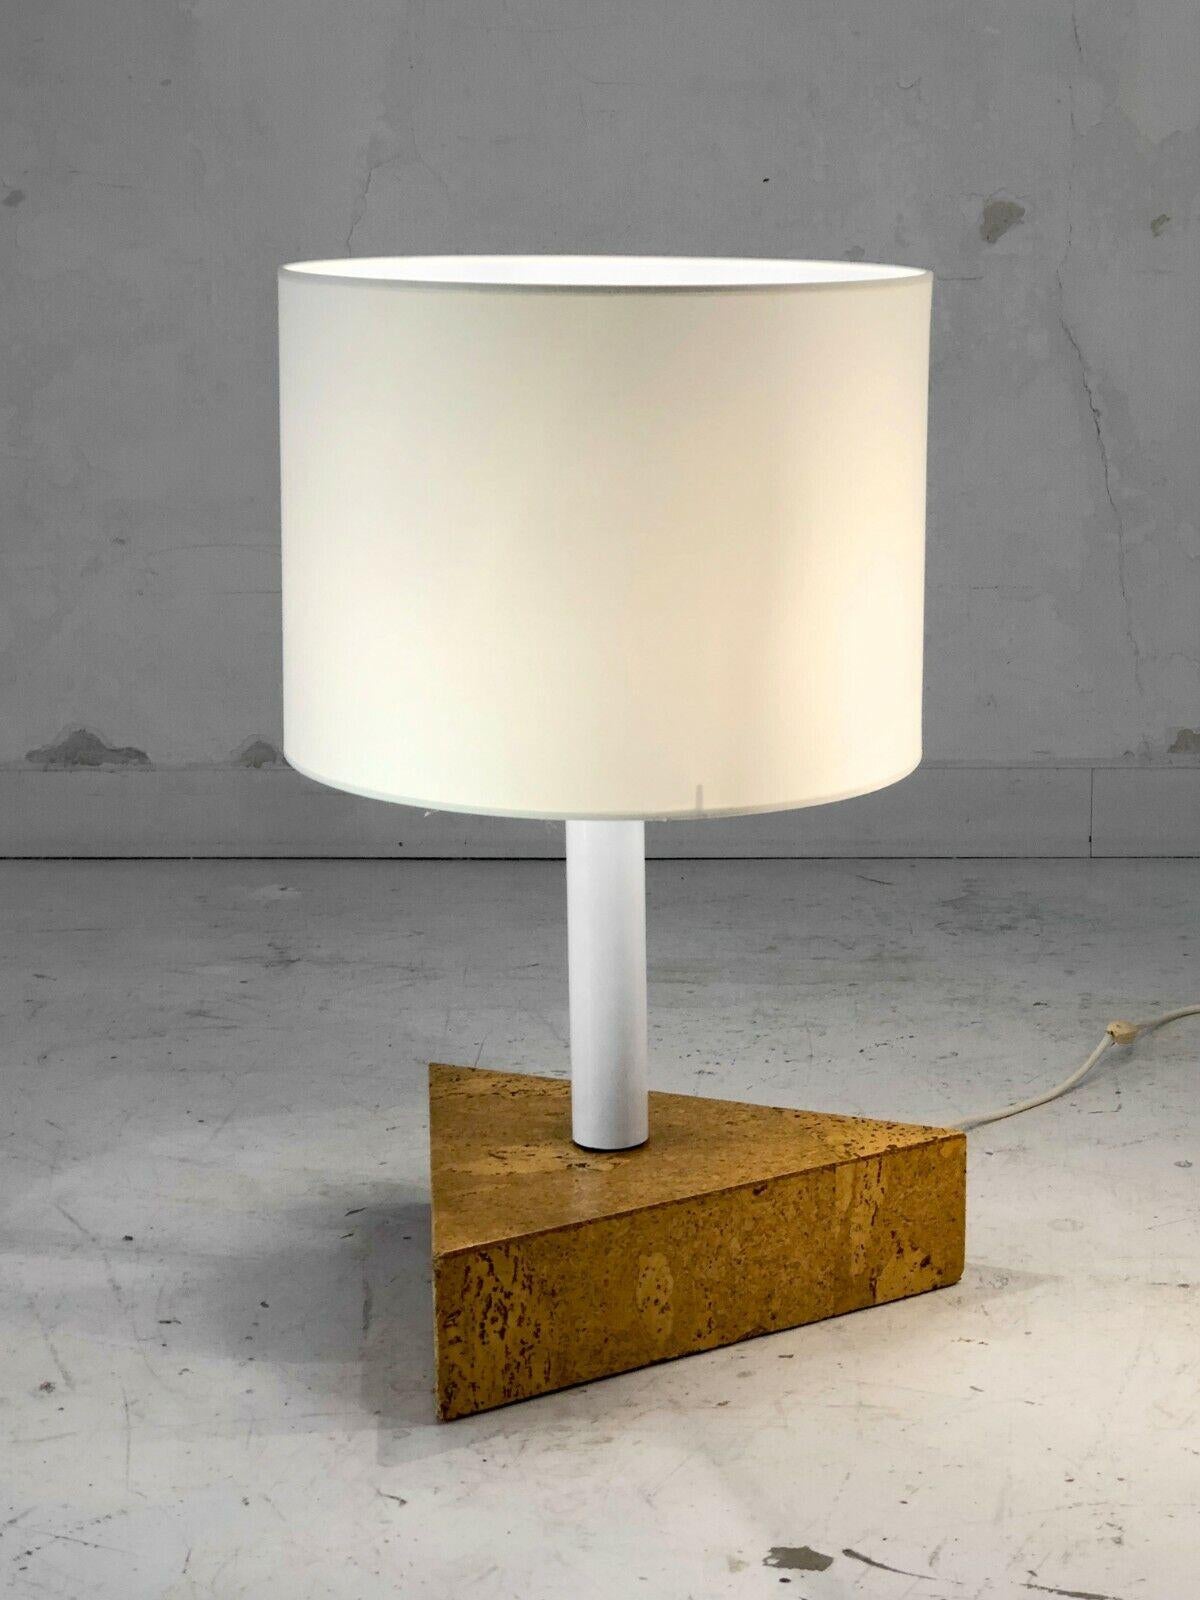 Une énorme lampe à poser ou plutôt, lampadaire, post-moderniste, Bauhaus, Whiting, épaisse base triangulaire en bois plaqué de loupe de liège verni, tube en métal laqué blanc surmonté d'une ampoule à vis et d'un large abat-jour. jour cylindrique, à